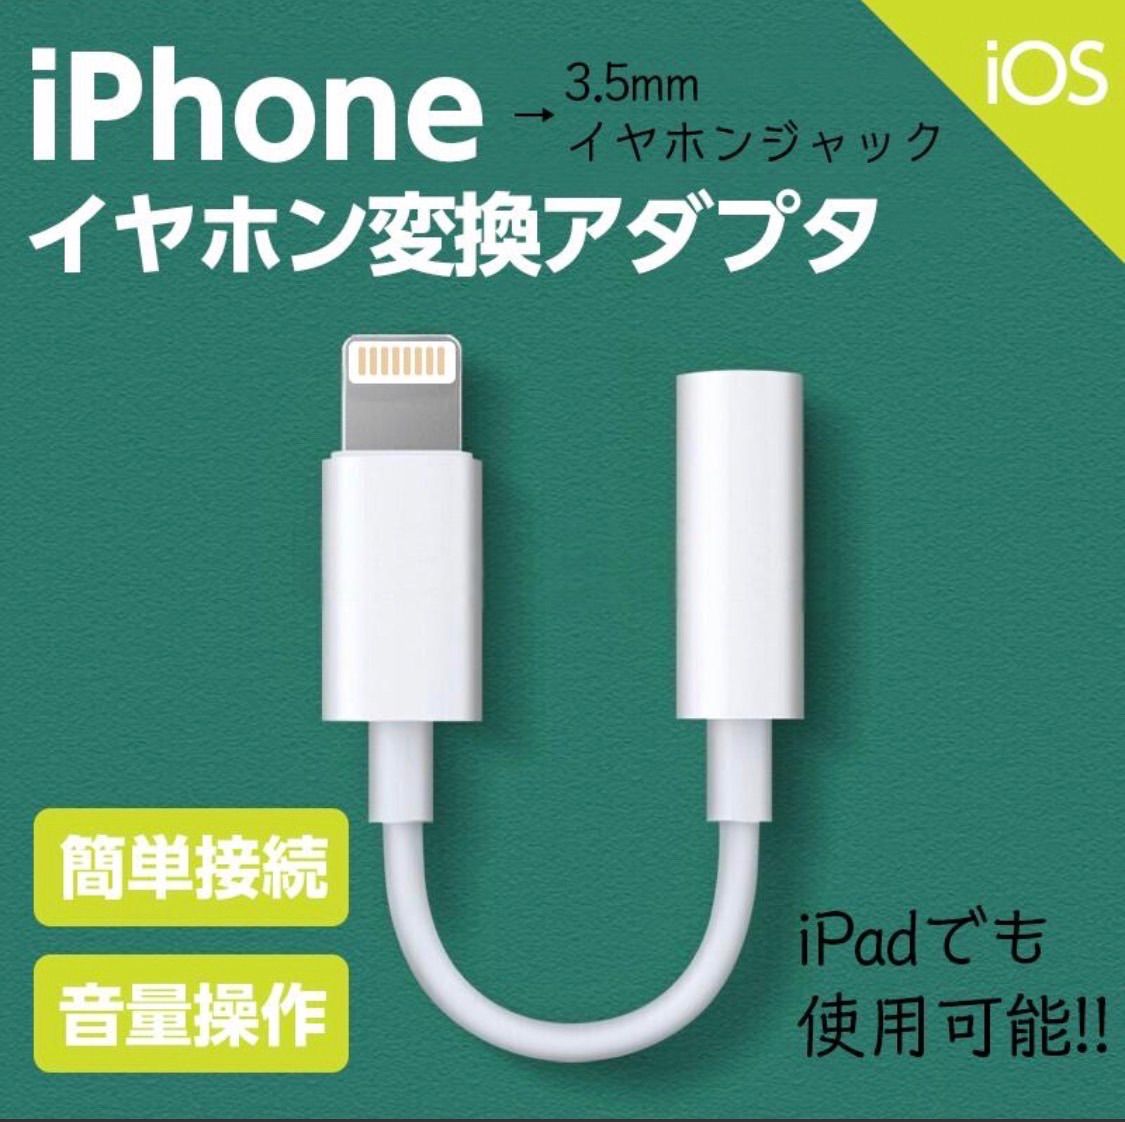 ※iPhone イヤホン 変換アダプタ ケーブル 3.5mm ライトニング